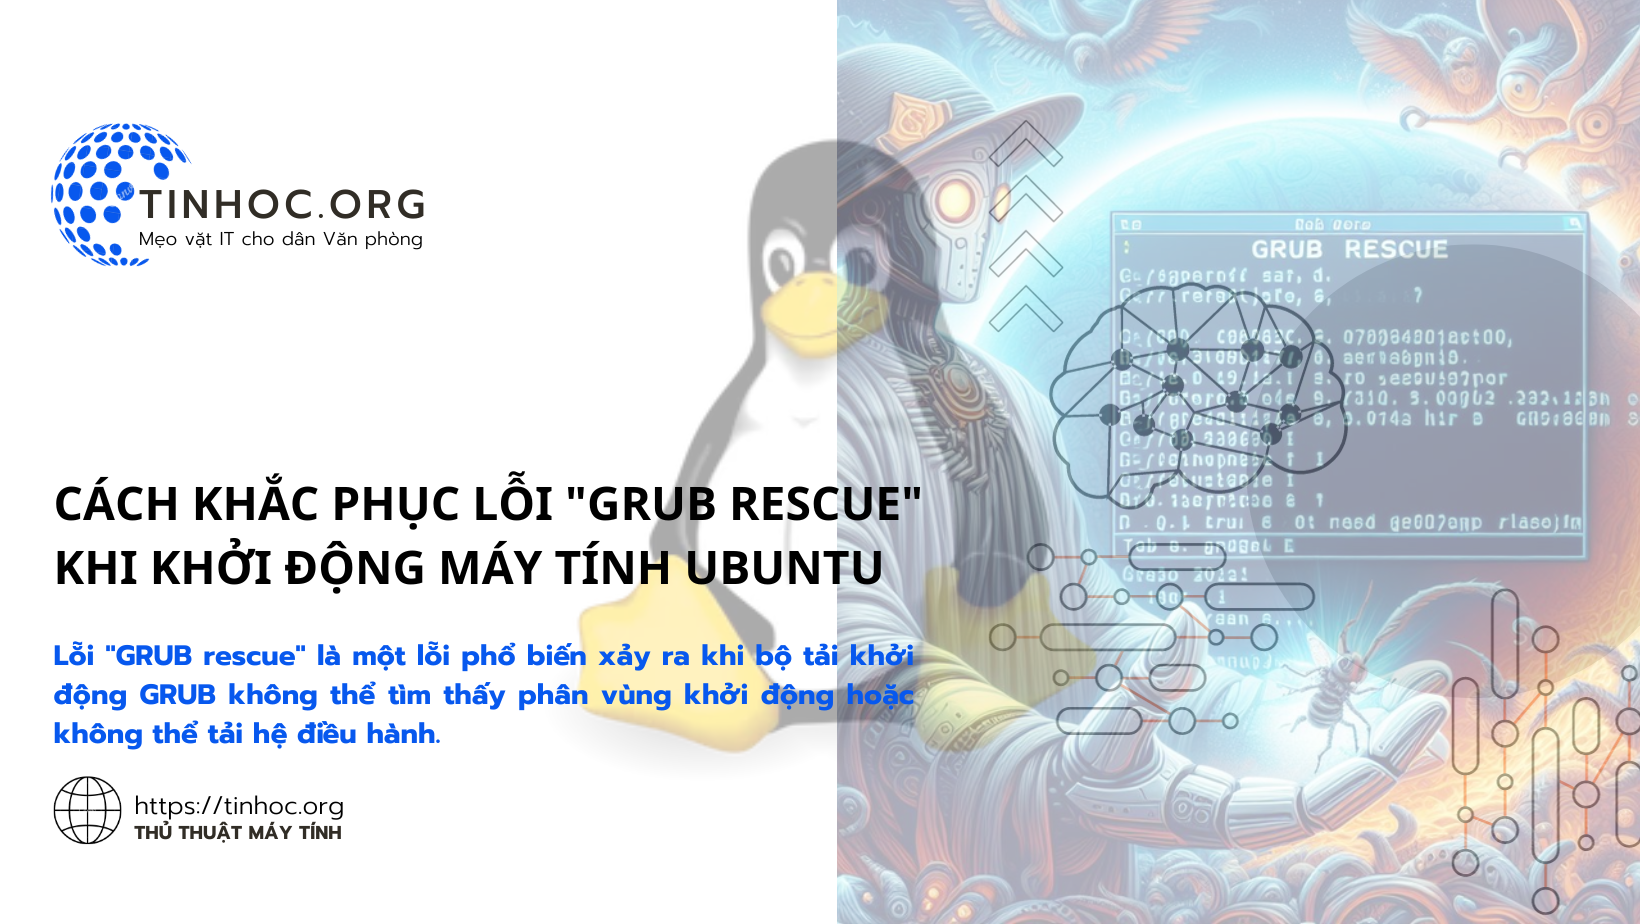 Lỗi "GRUB rescue" là một lỗi phổ biến xảy ra khi bộ tải khởi động GRUB không thể tìm thấy phân vùng khởi động hoặc không thể tải hệ điều hành.